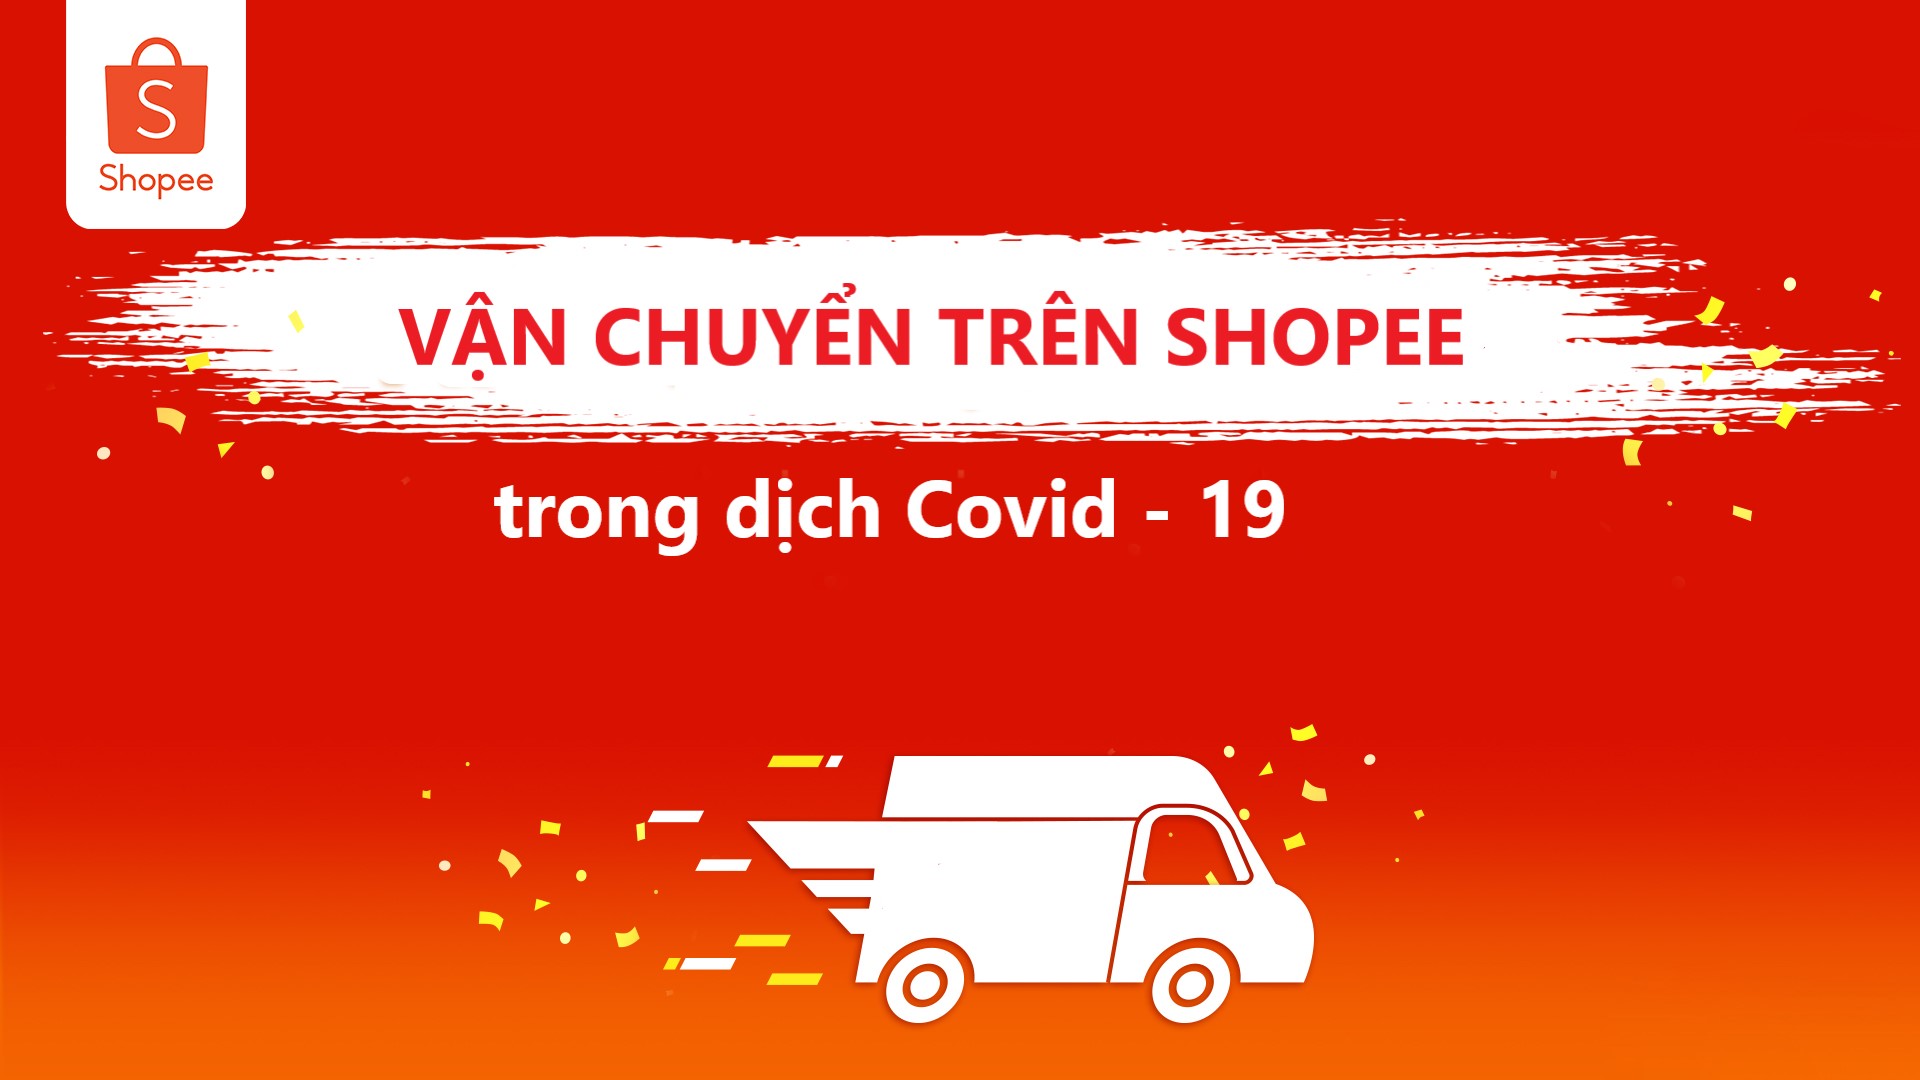 Một số thông tin mà người bán cần biết về vận chuyển Shopee trong dịch Covid – 19